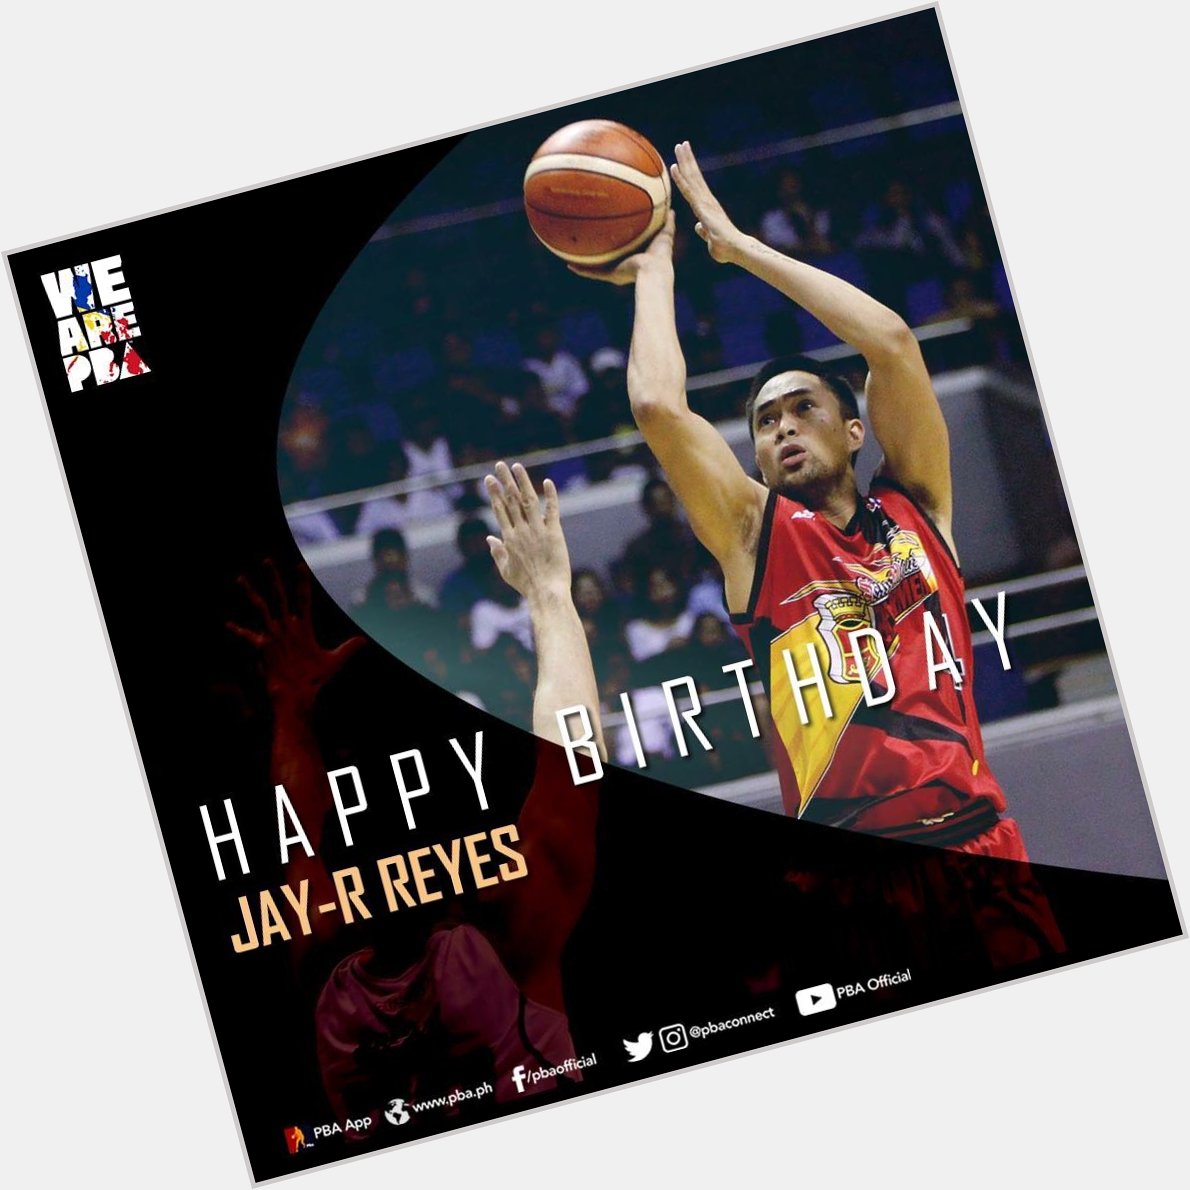 Happy birthday to \s Jay-R Reyes! 